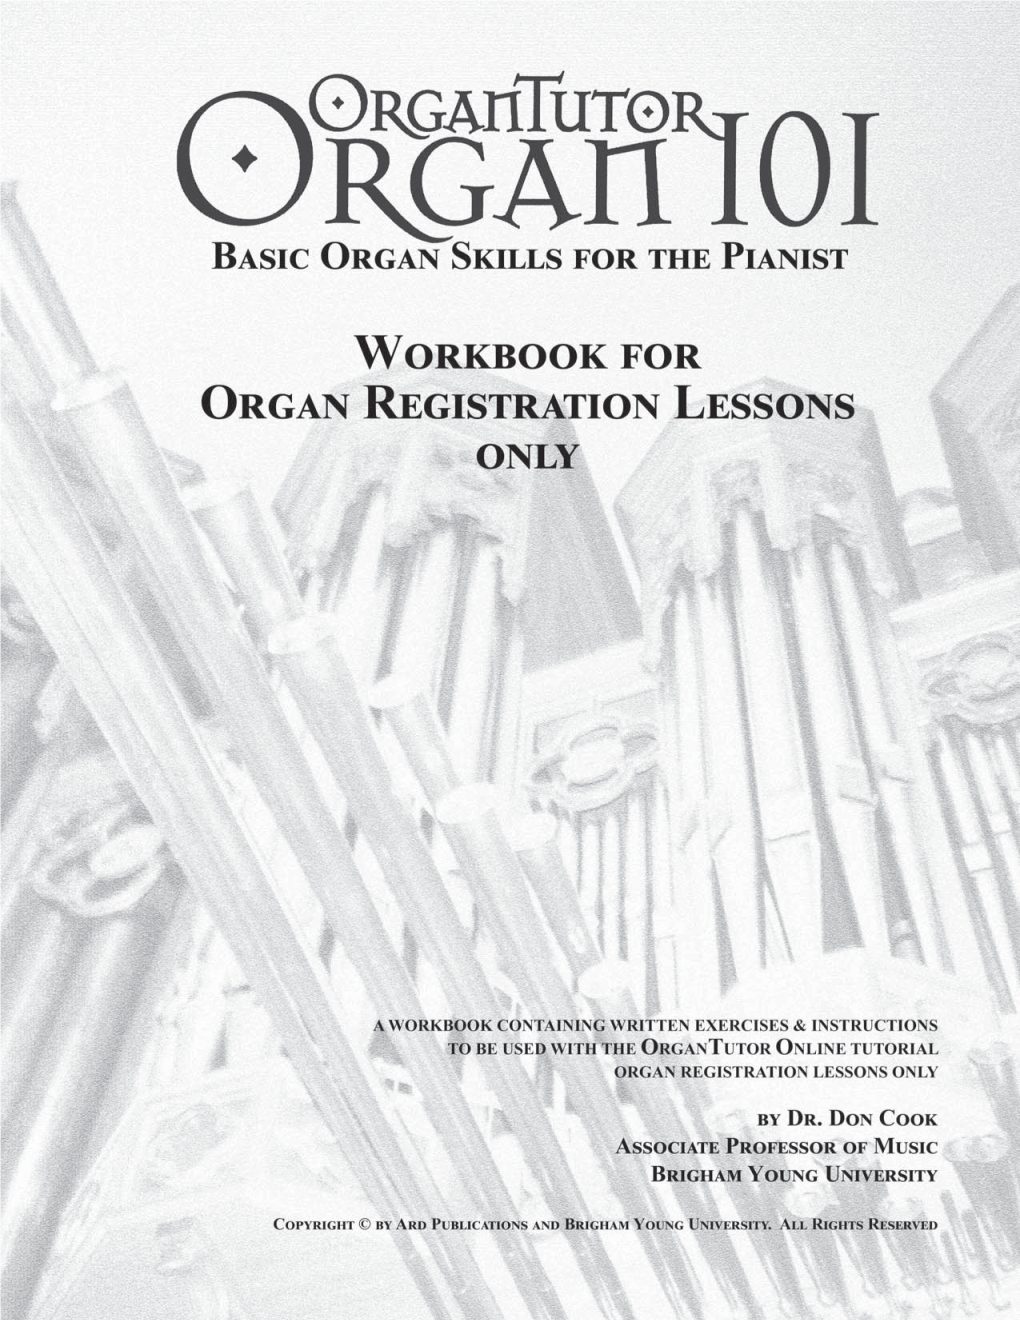 Organ Registration Lessons of the Organtutor Organ 101 Online Tutorial